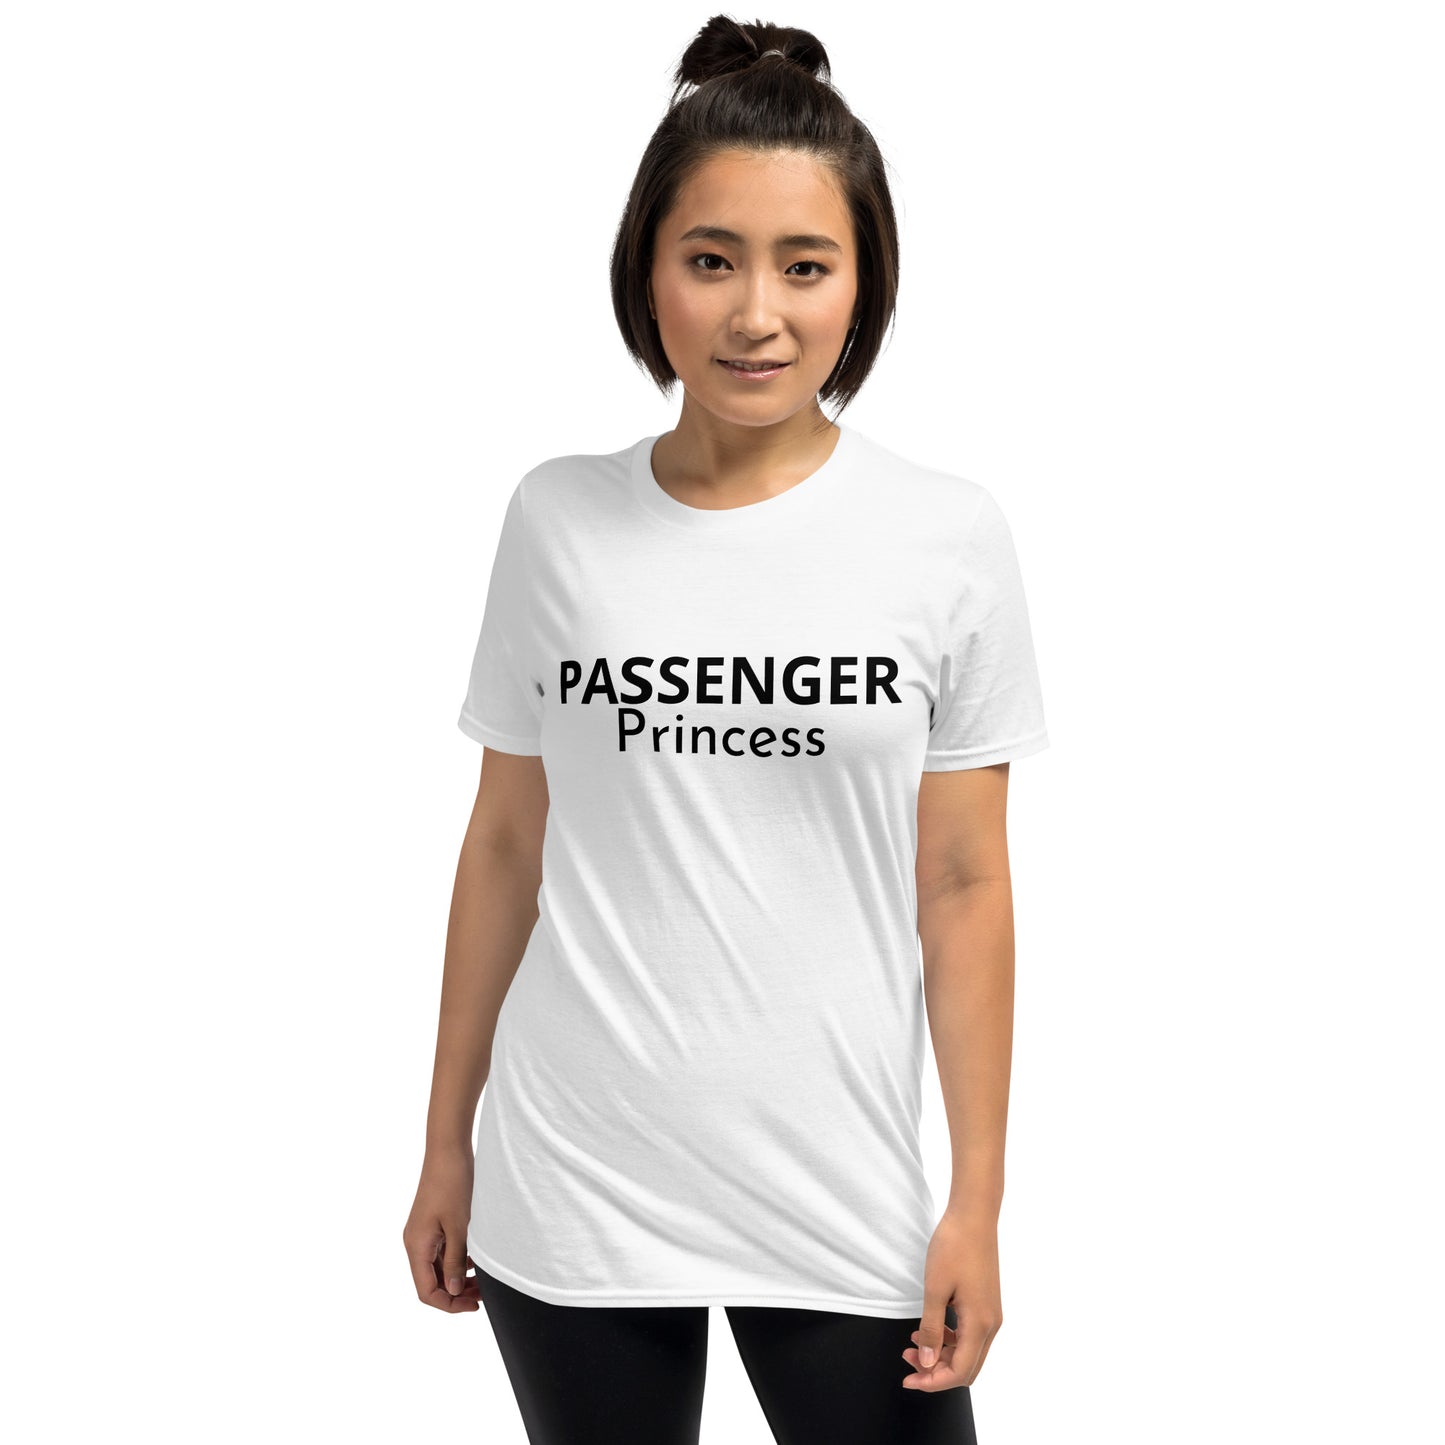 “PASSENGER PRINCESS” T-Shirt